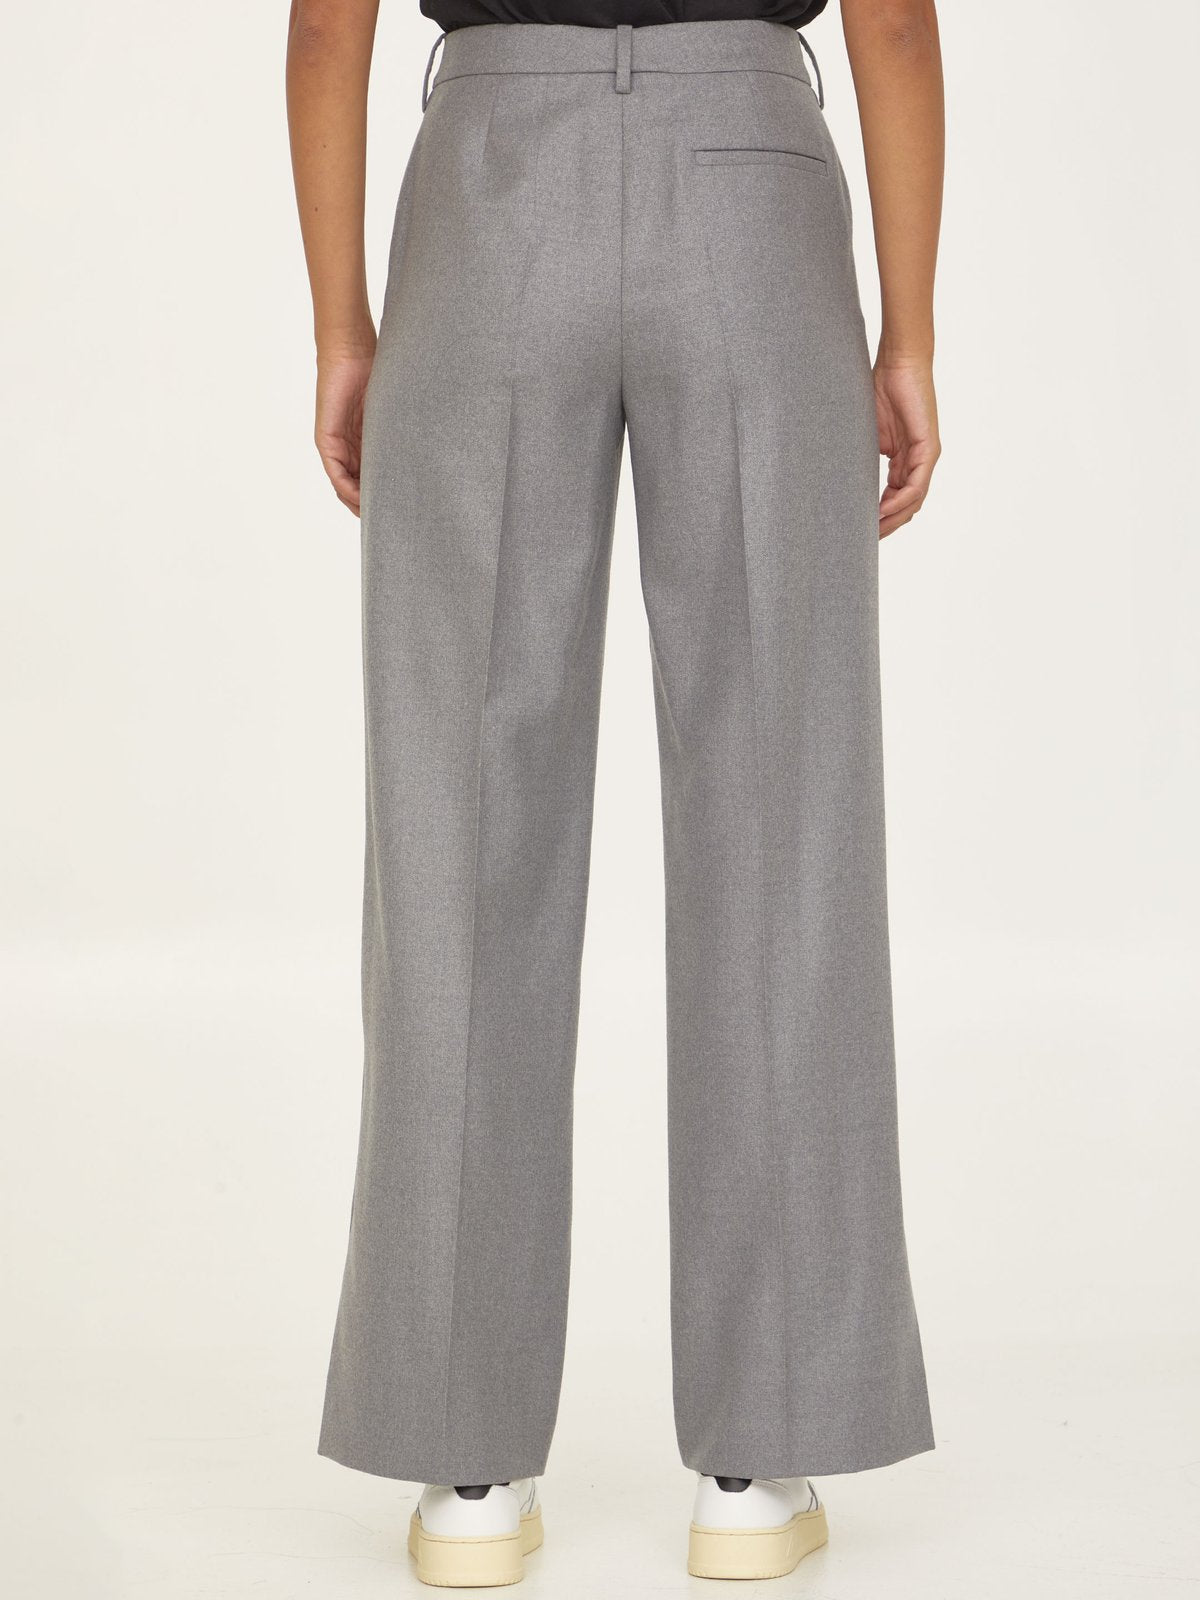 Loewe High-Waist Tailored Trousers